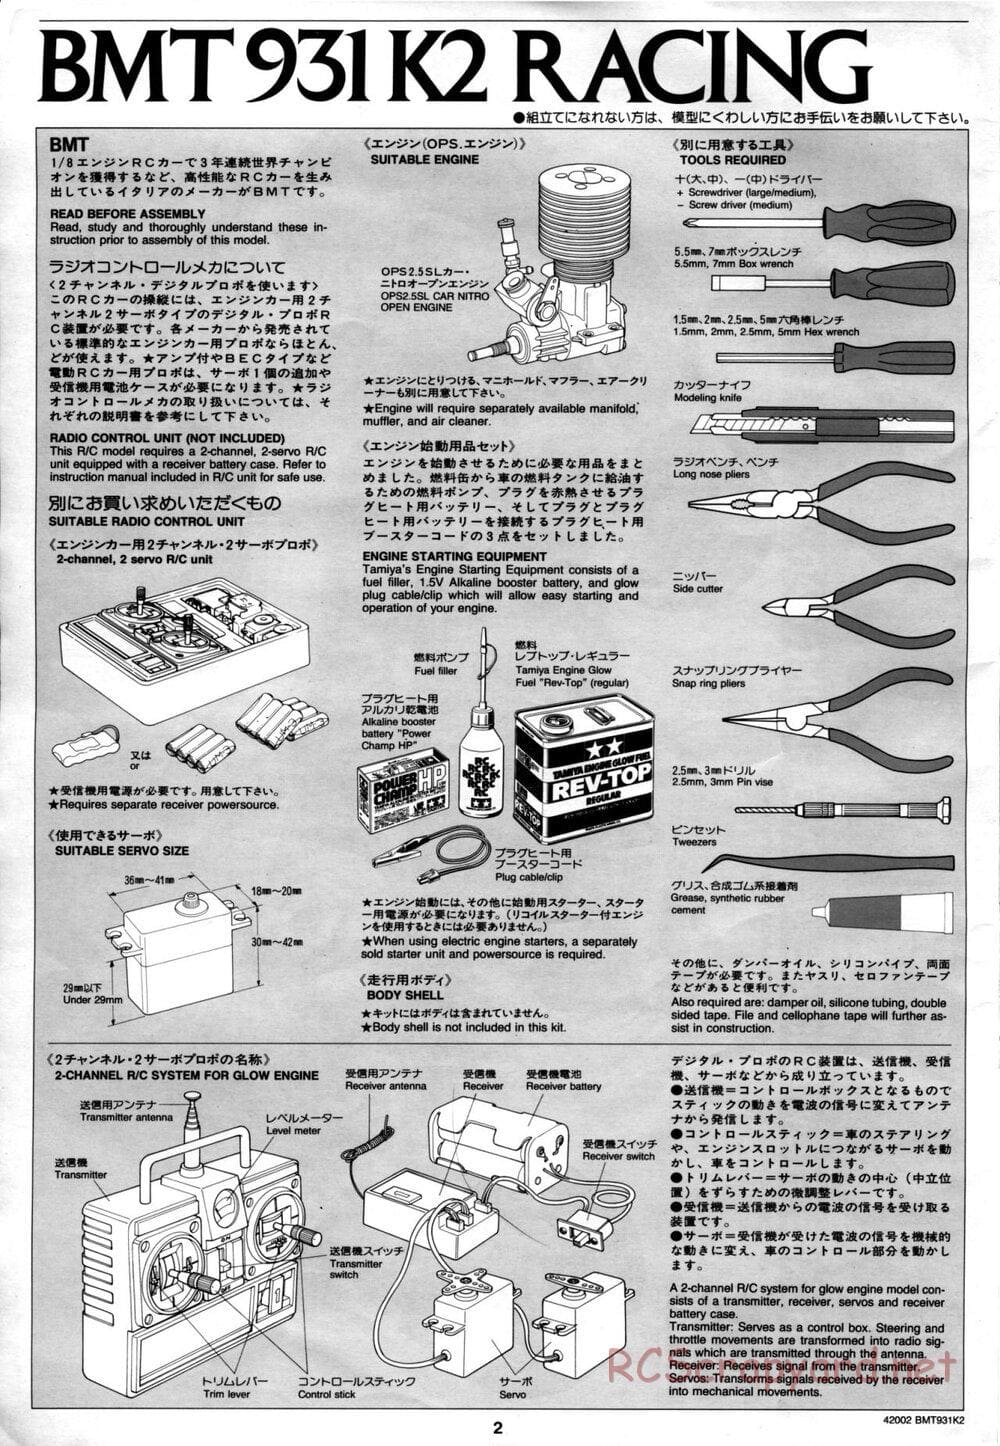 Tamiya - BMT 931 K2 Racing Chassis - Manual - Page 2